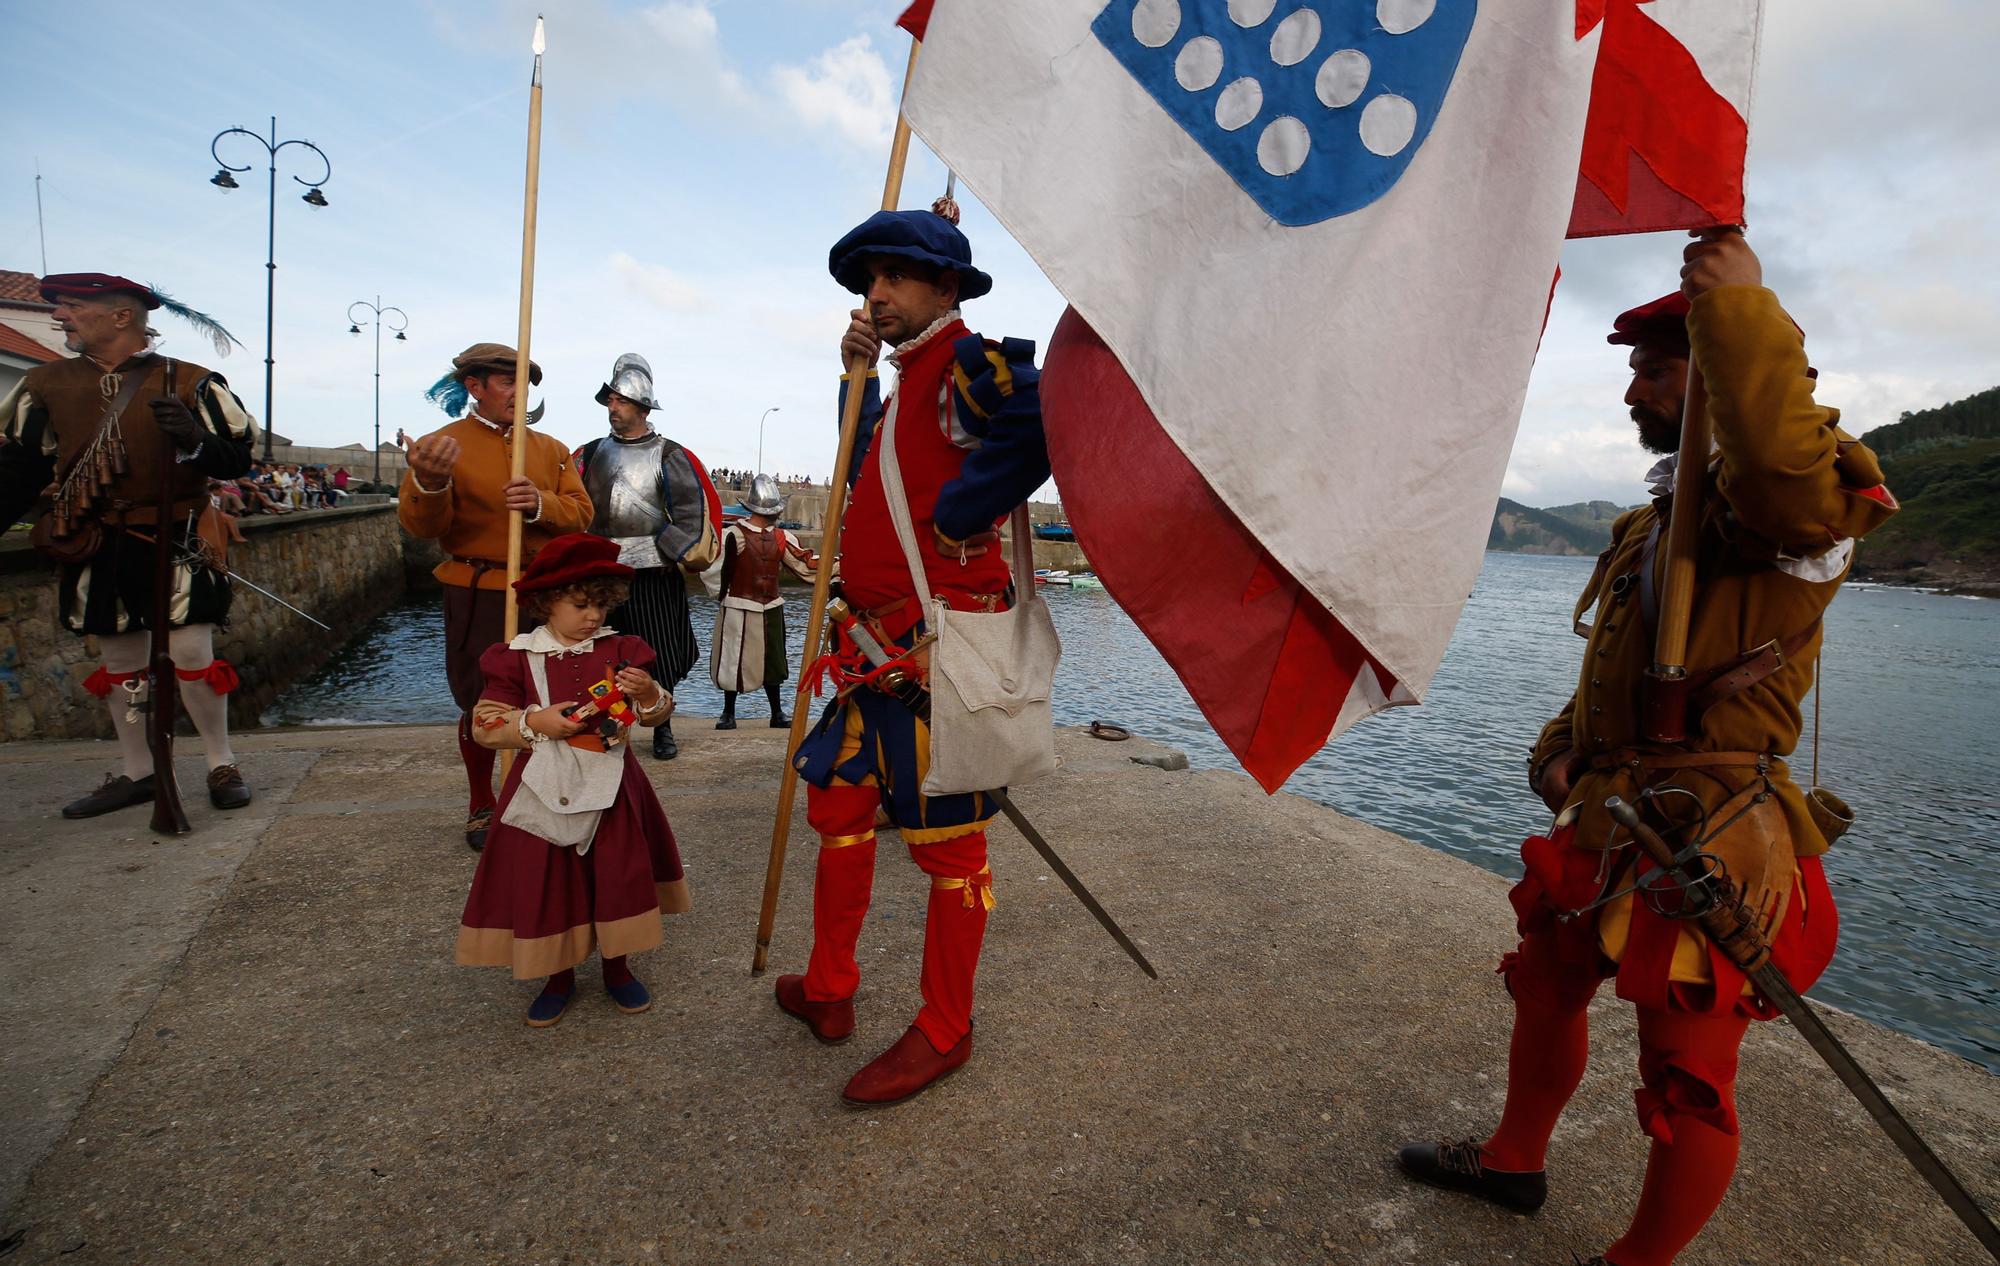 El desembarco de Carlos V en Tazones, así es la gran recreación histórica de Villaviciosa